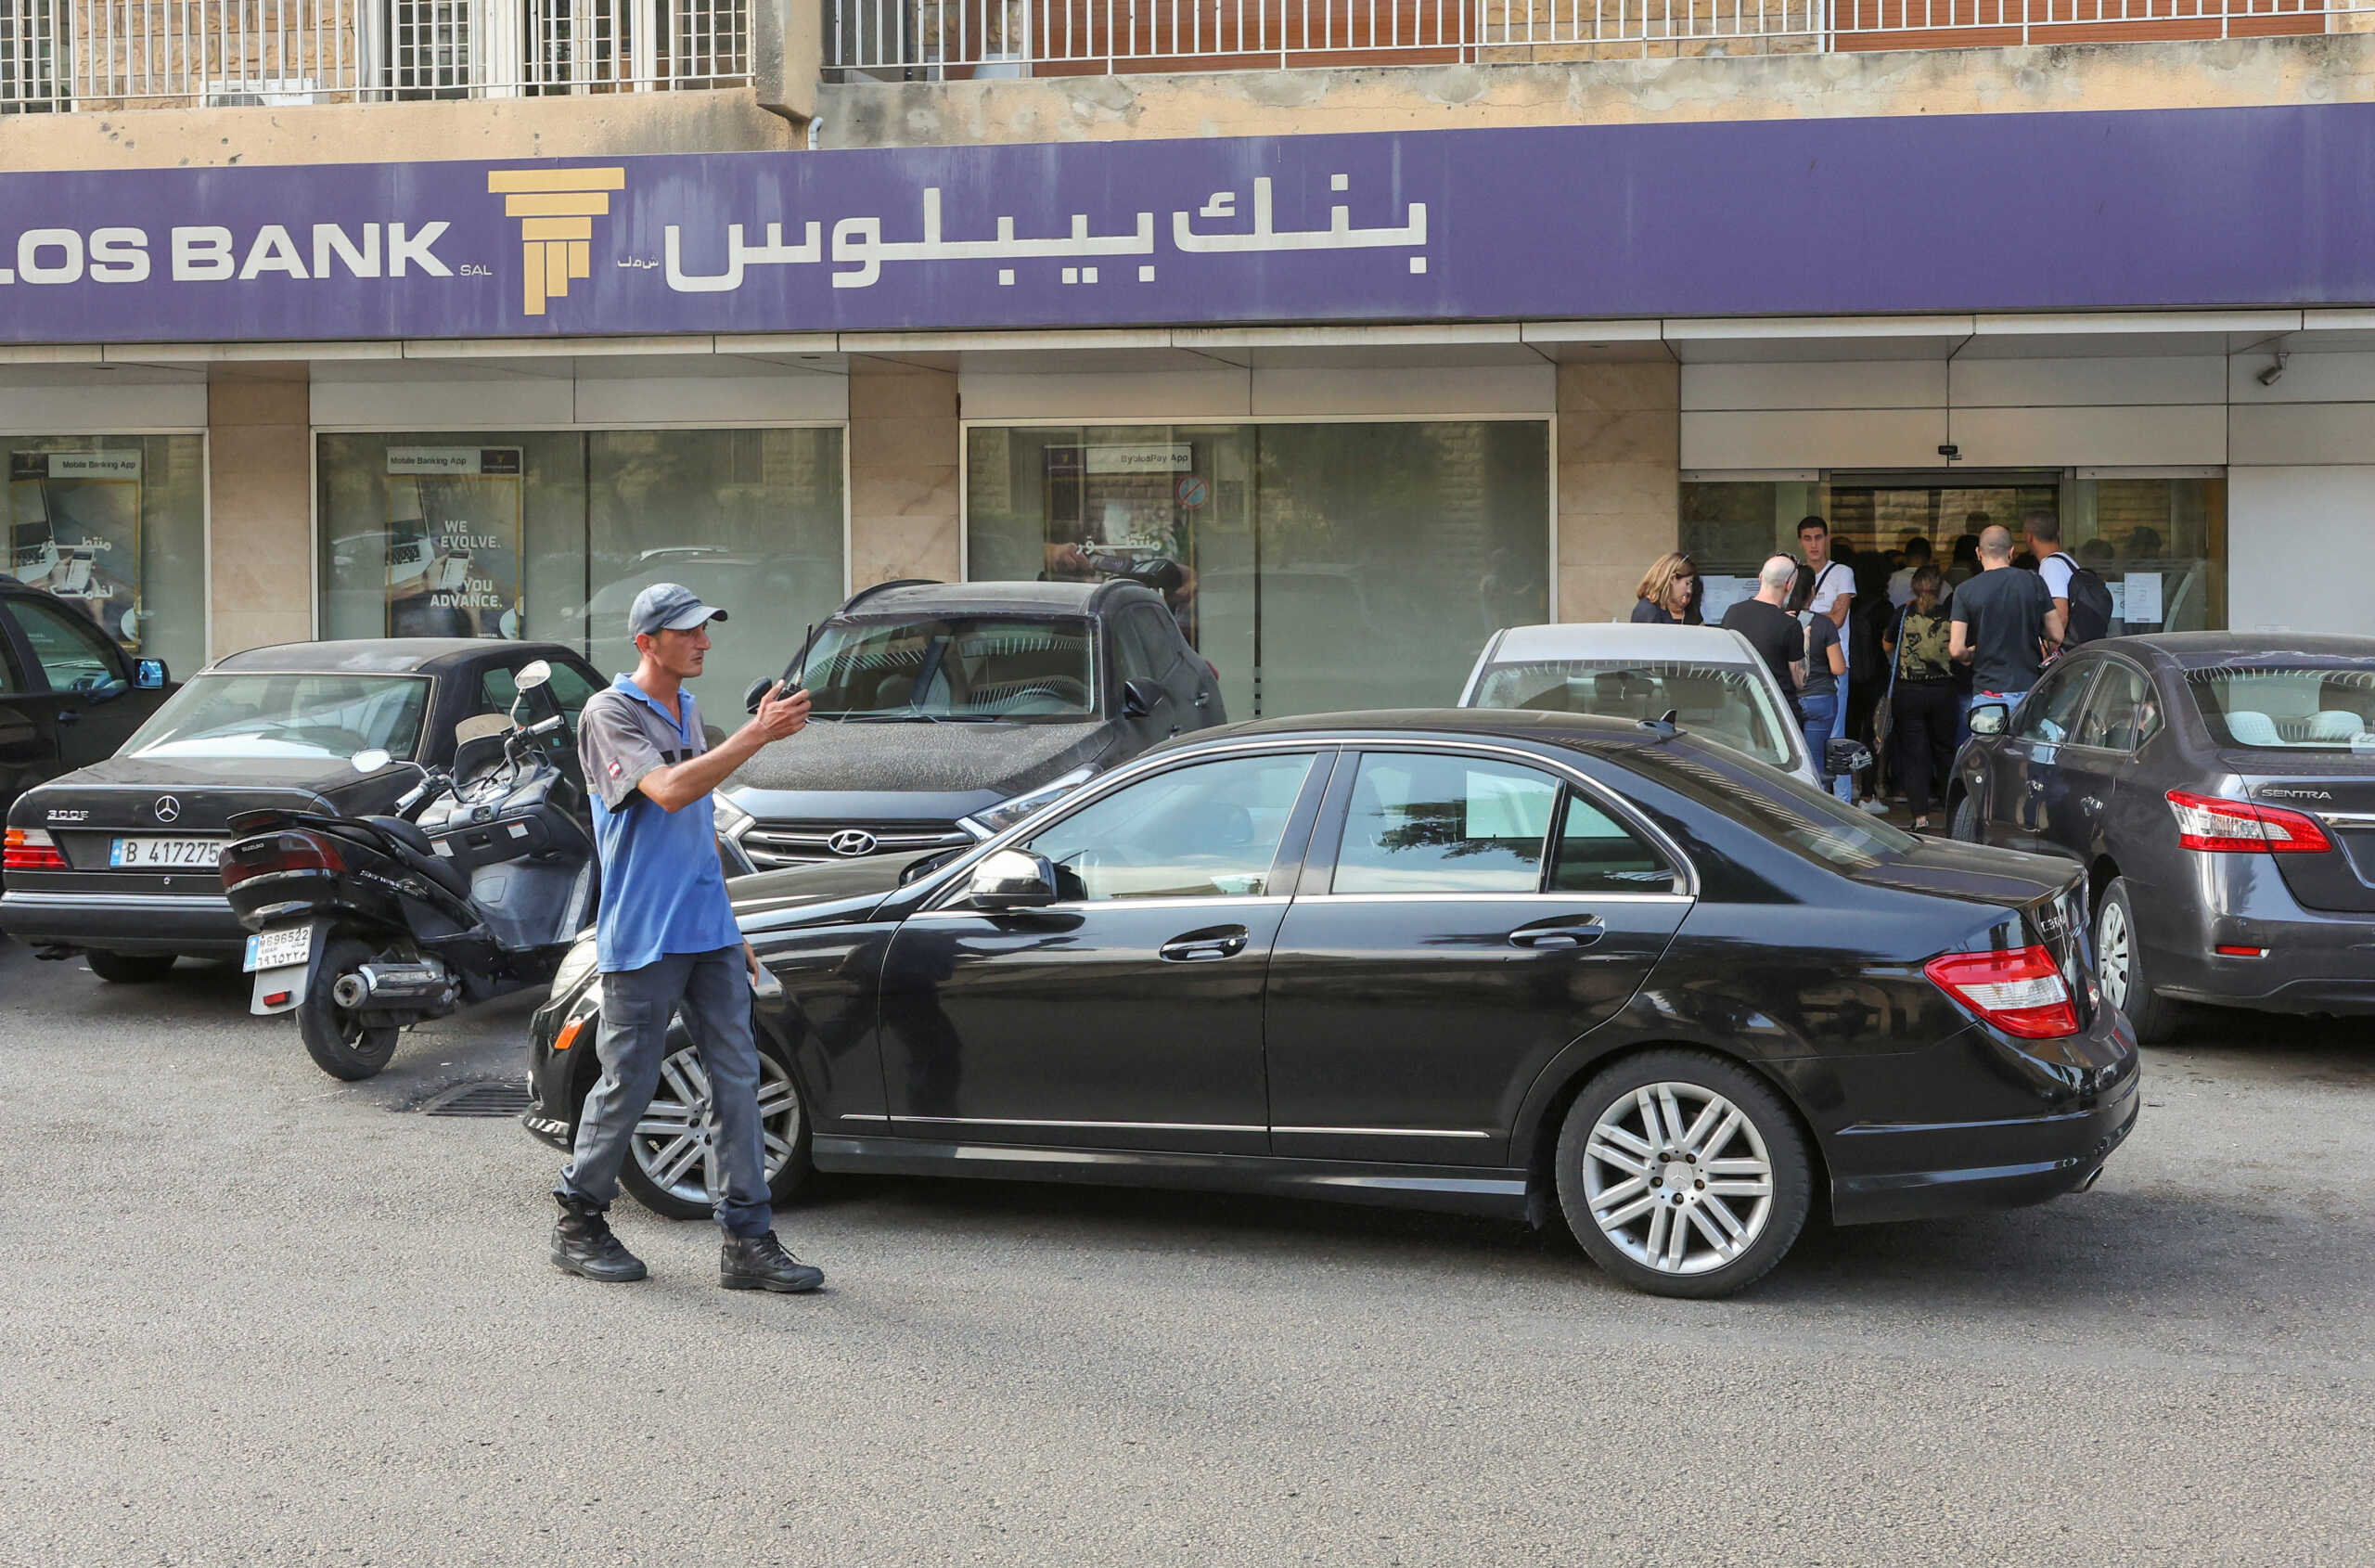 Λίβανος: Δε φεύγει από την τράπεζα η βουλευτής – Καθιστική διαμαρτυρία μέχρι να πάρει τις καταθέσεις της